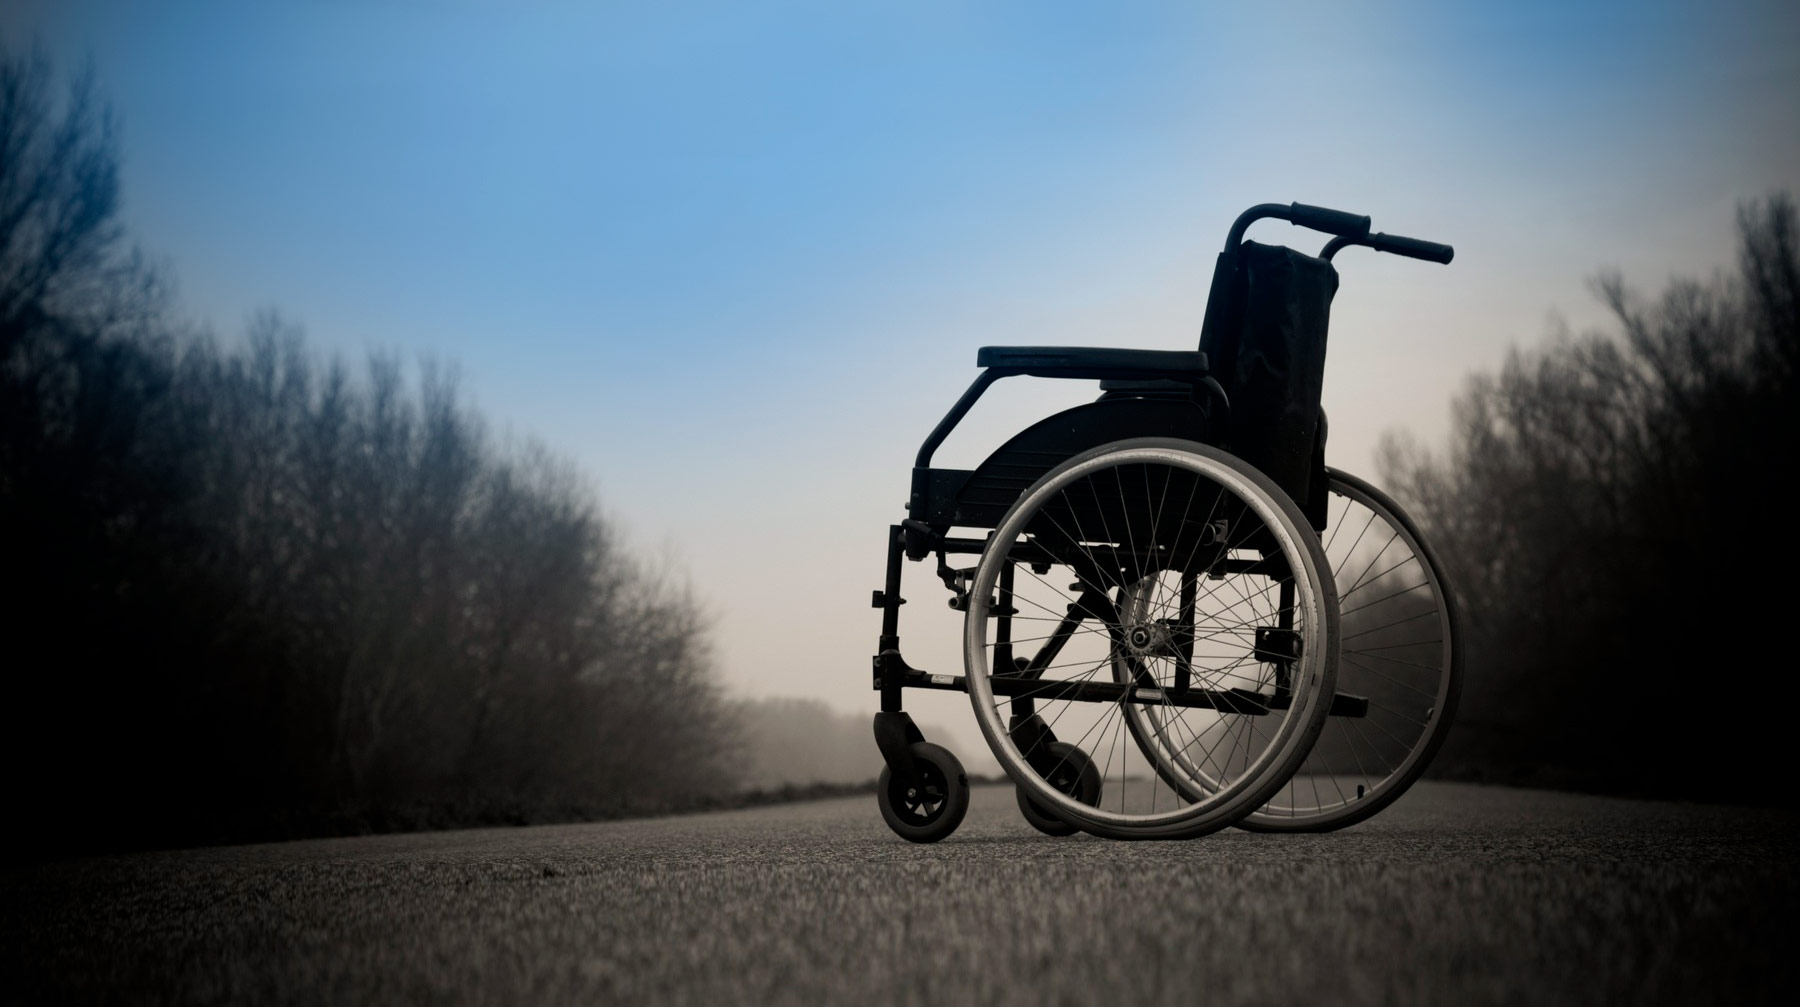 Инвалиду с ДЦП поставили диагноз «Умственная отсталость» и отказали в необходимой коляске: по закону она ему противопоказана Фото: © CC0 Public Domain